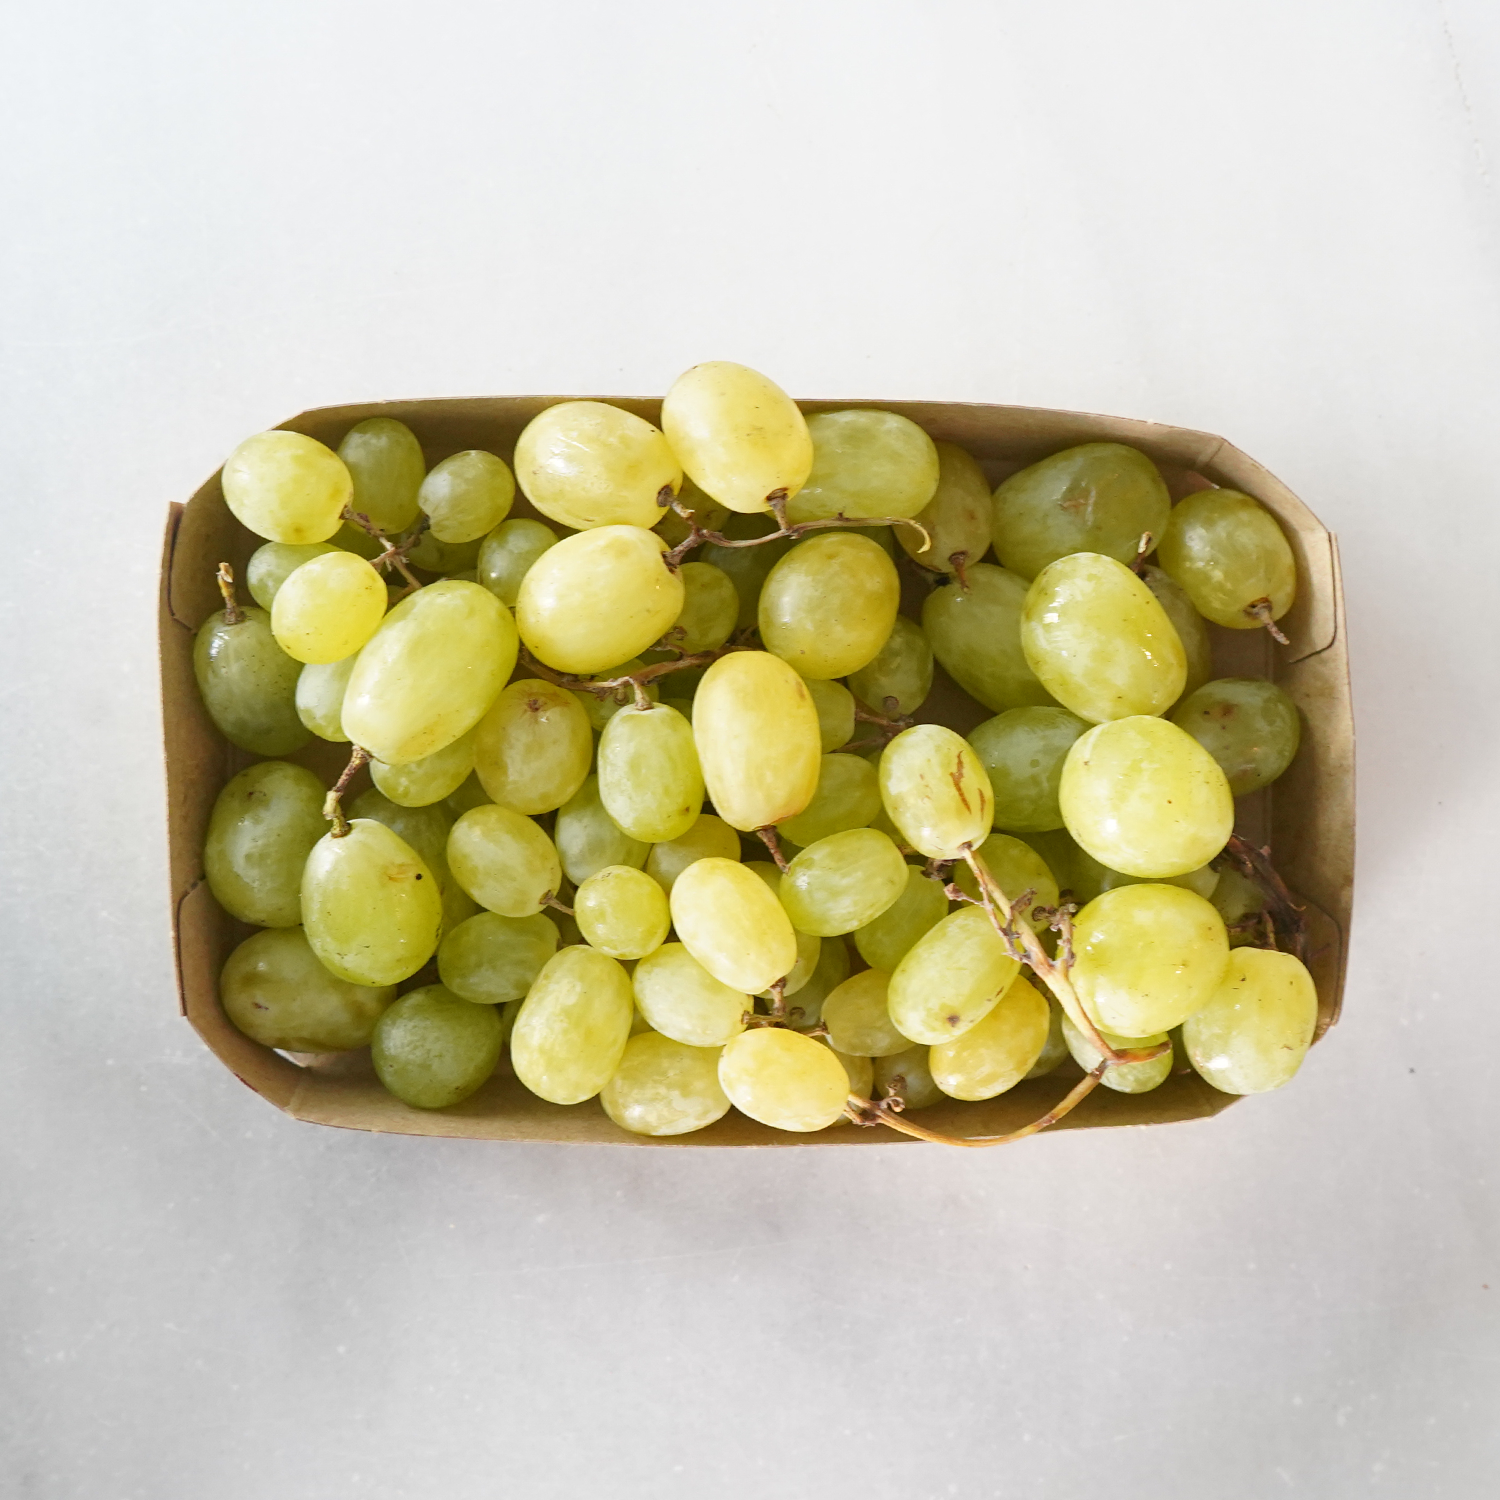 Paquete uvas blancas ecológicas